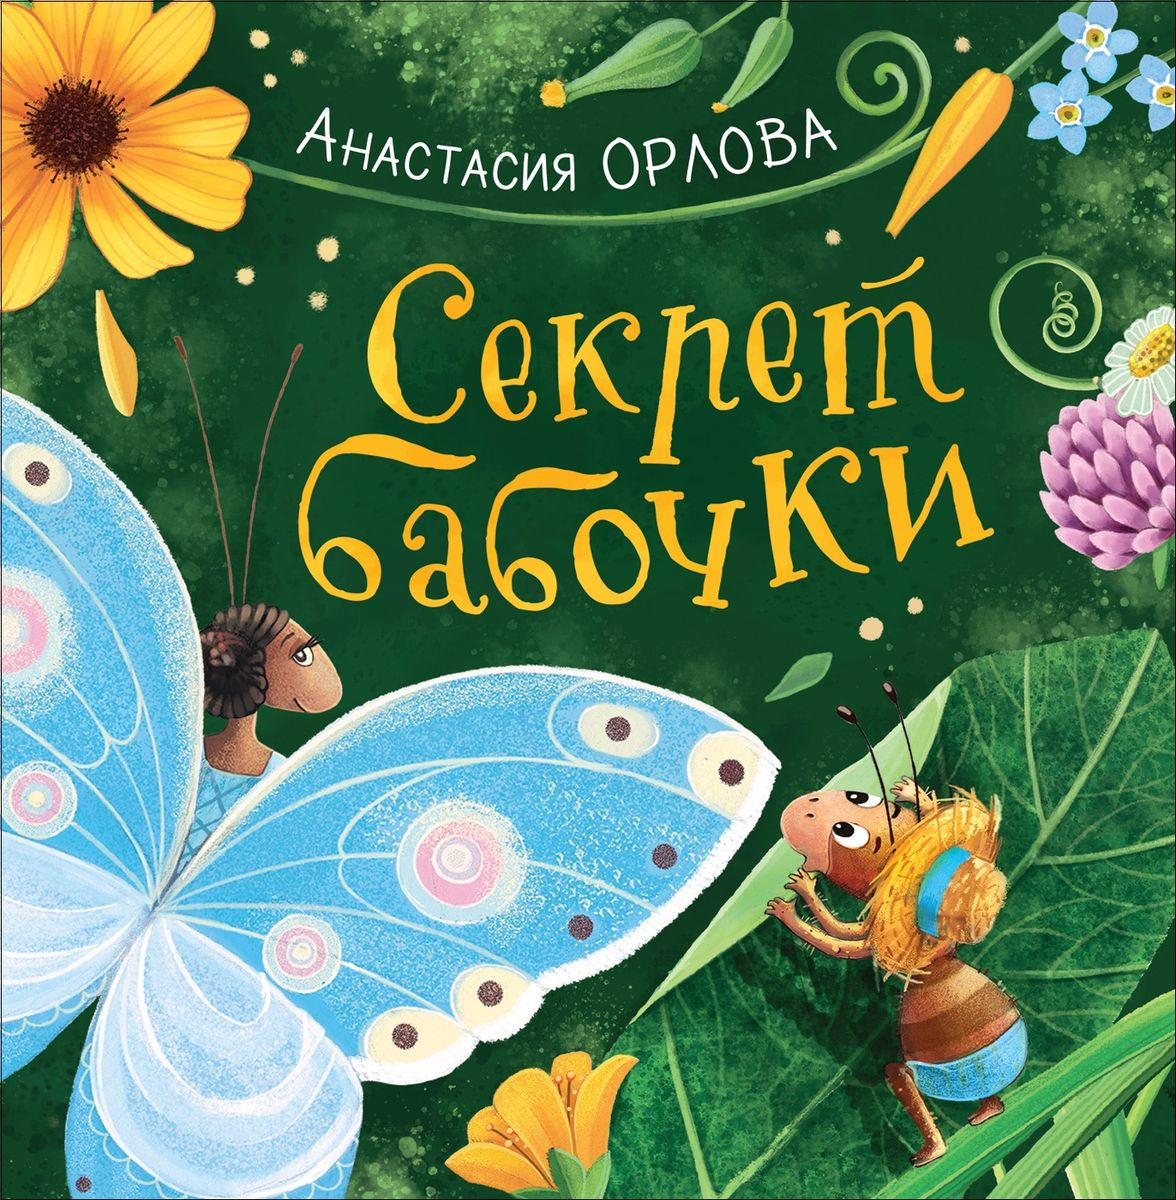 Нажмите для увеличения. Анастасия Александровна Орлова. «Секрет бабочки» 